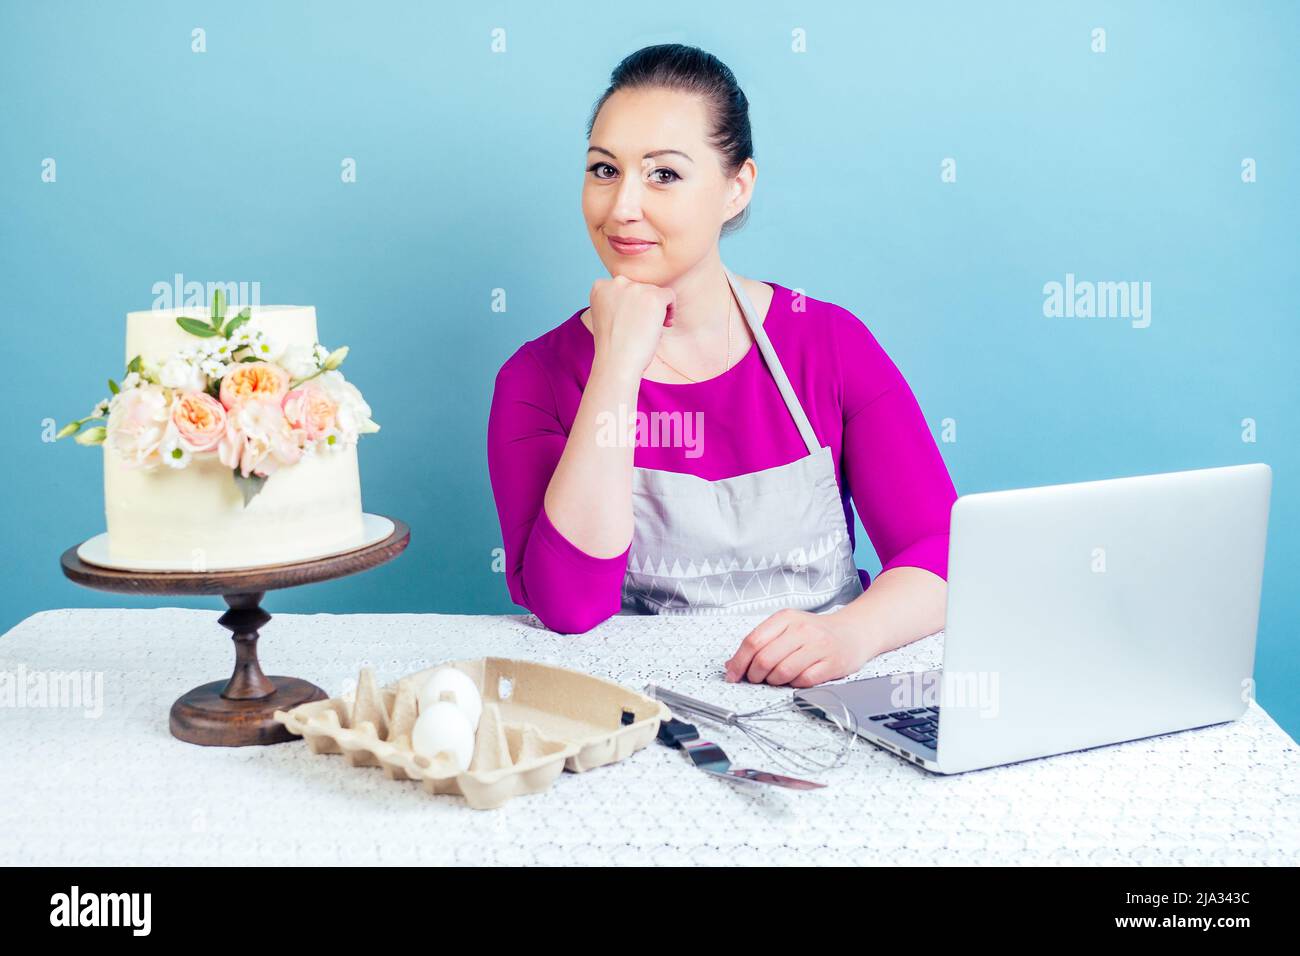 casalinga dolciaria (pasticciere-cuoco) donna d'affari lavora con un computer portatile accanto alla torta di nozze bianca a due livelli con fiori freschi su un tavolo con un merletto Foto Stock